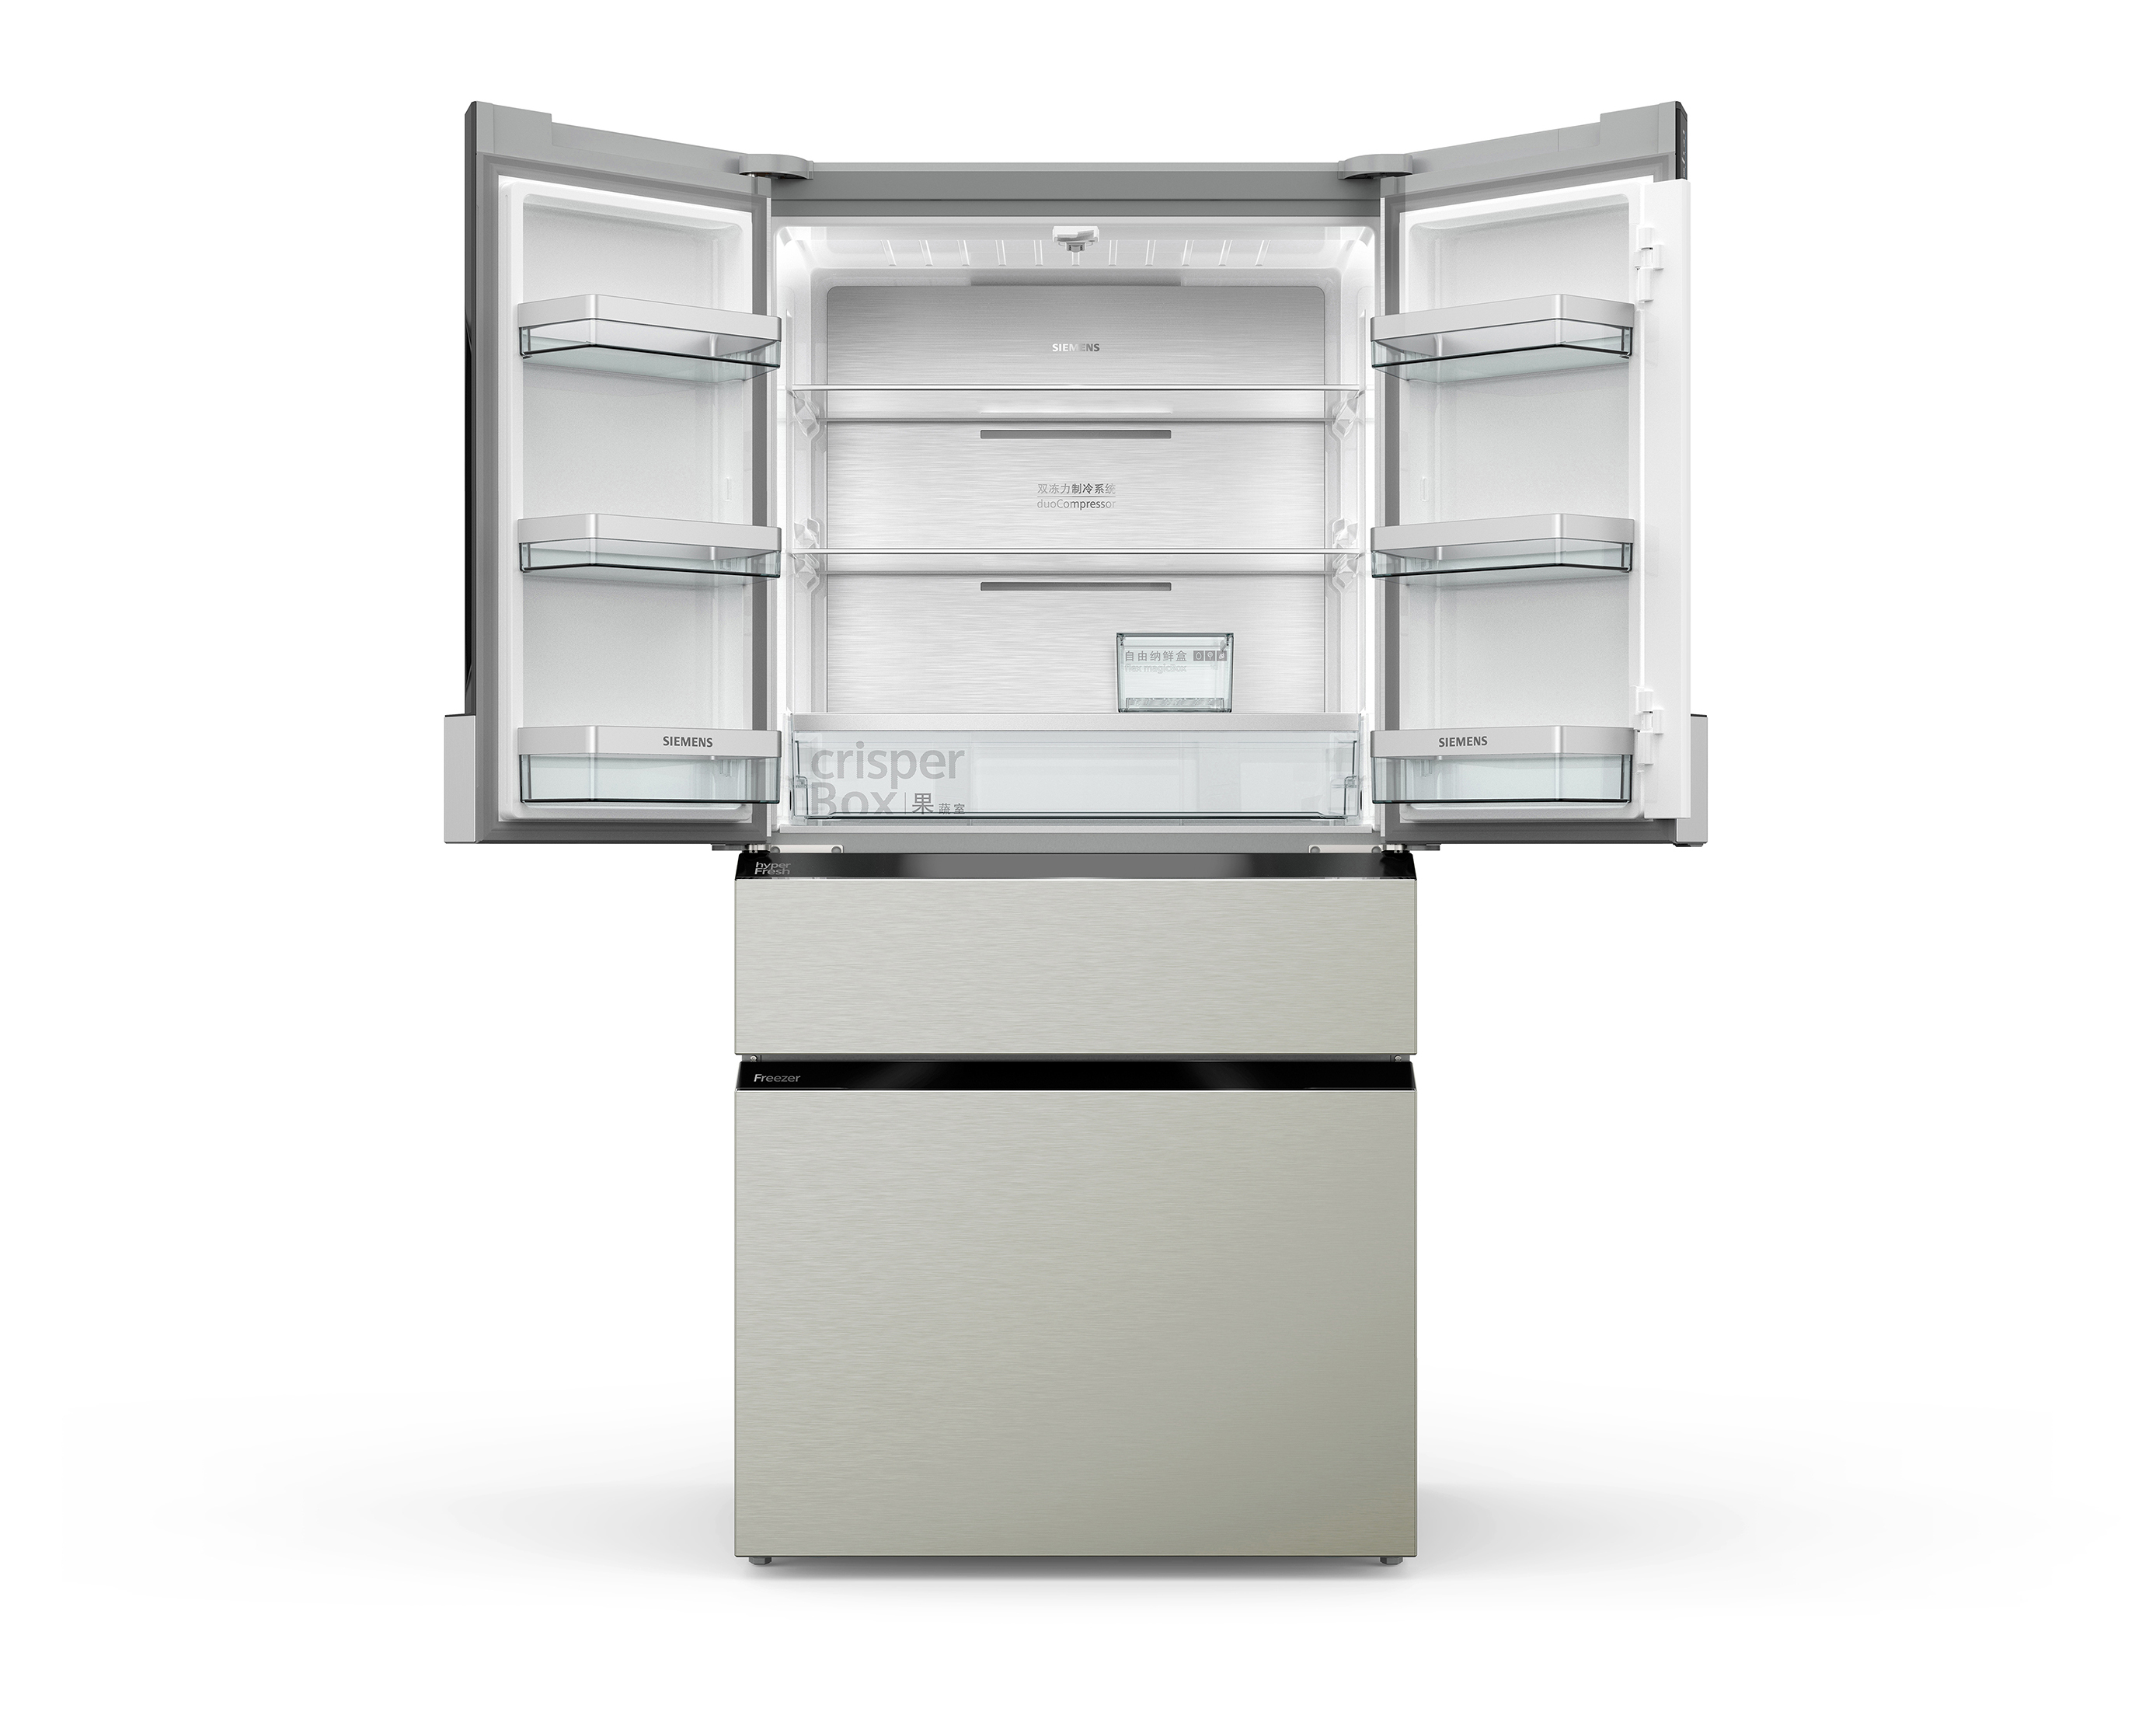 SIEMENS hyperFresh multidoor fridge